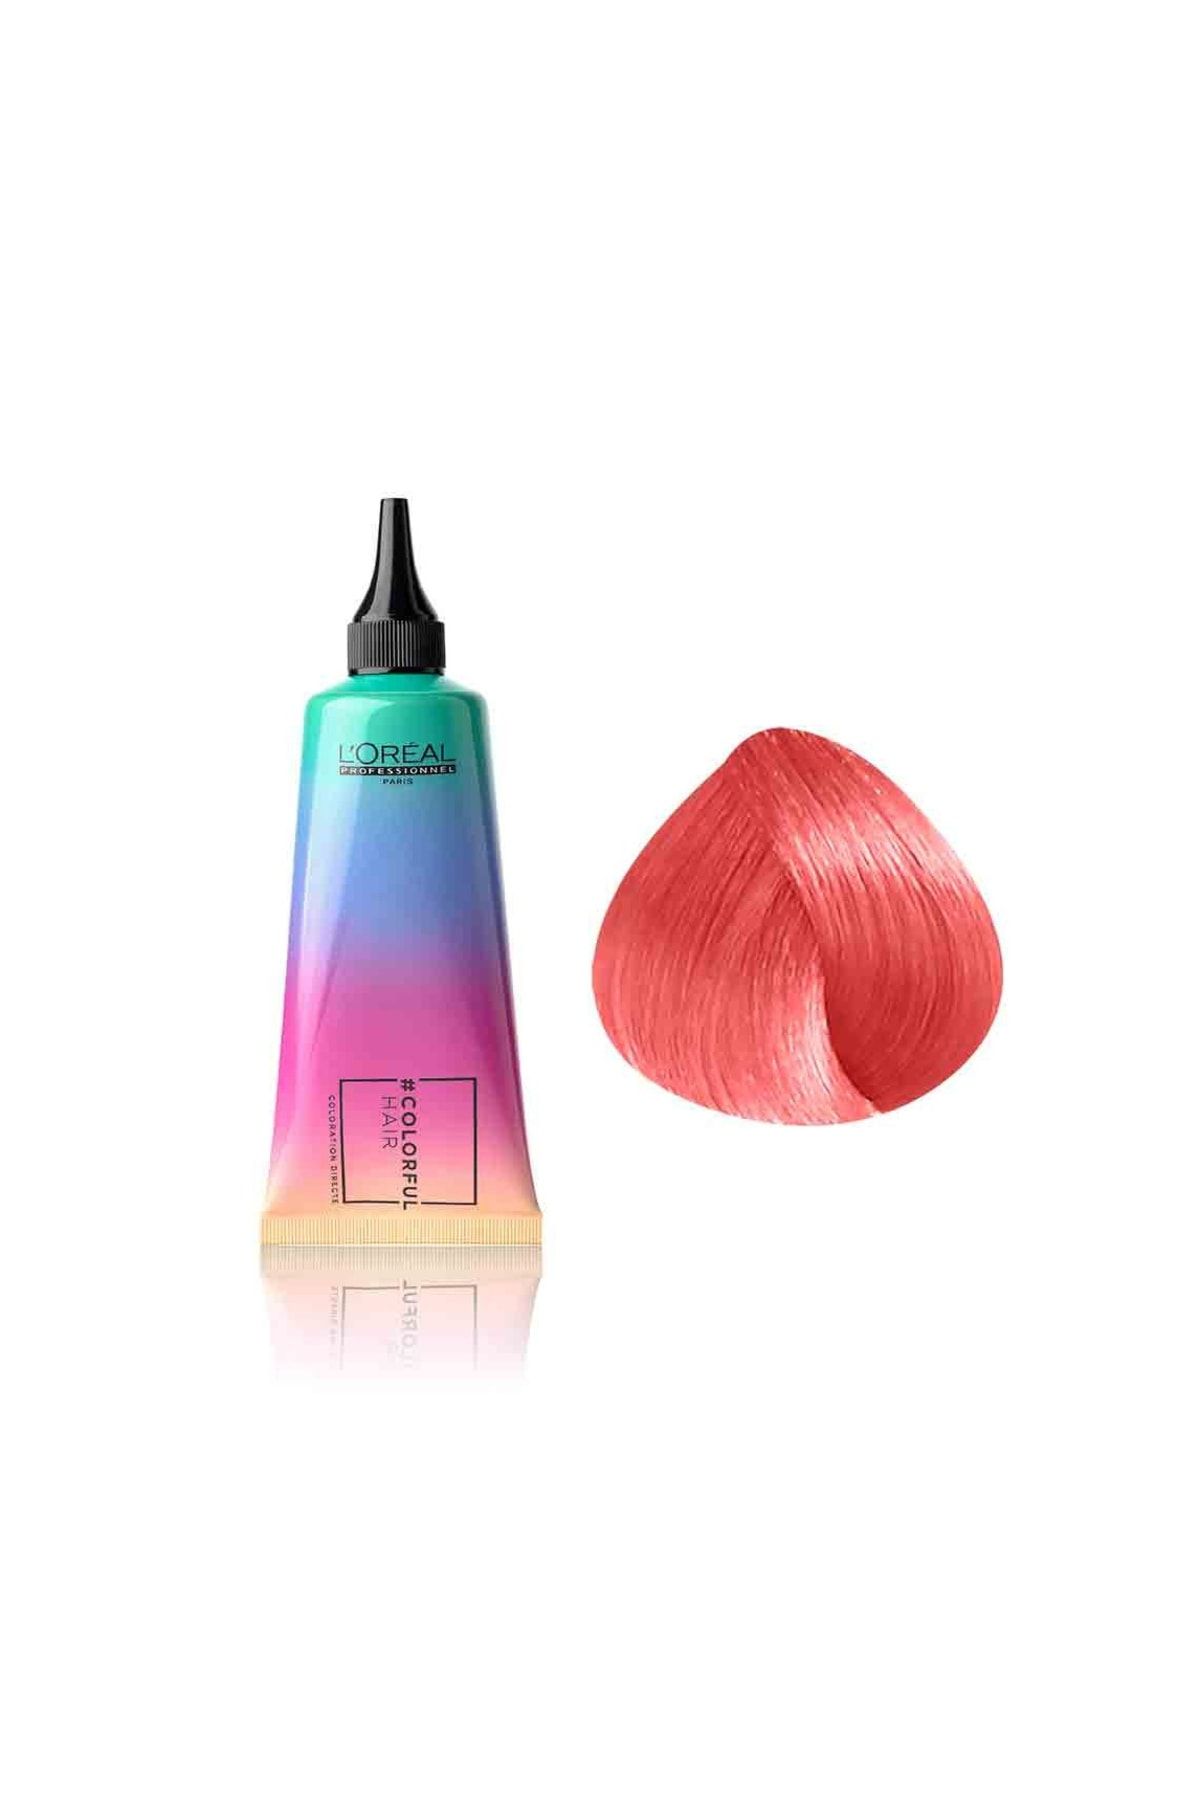 L'oreal Professionnel Colorful Hair Sunset Coral Turuncu Belirgin Yarı Kalıcı Amonyaksız Saç Boyası 90ml